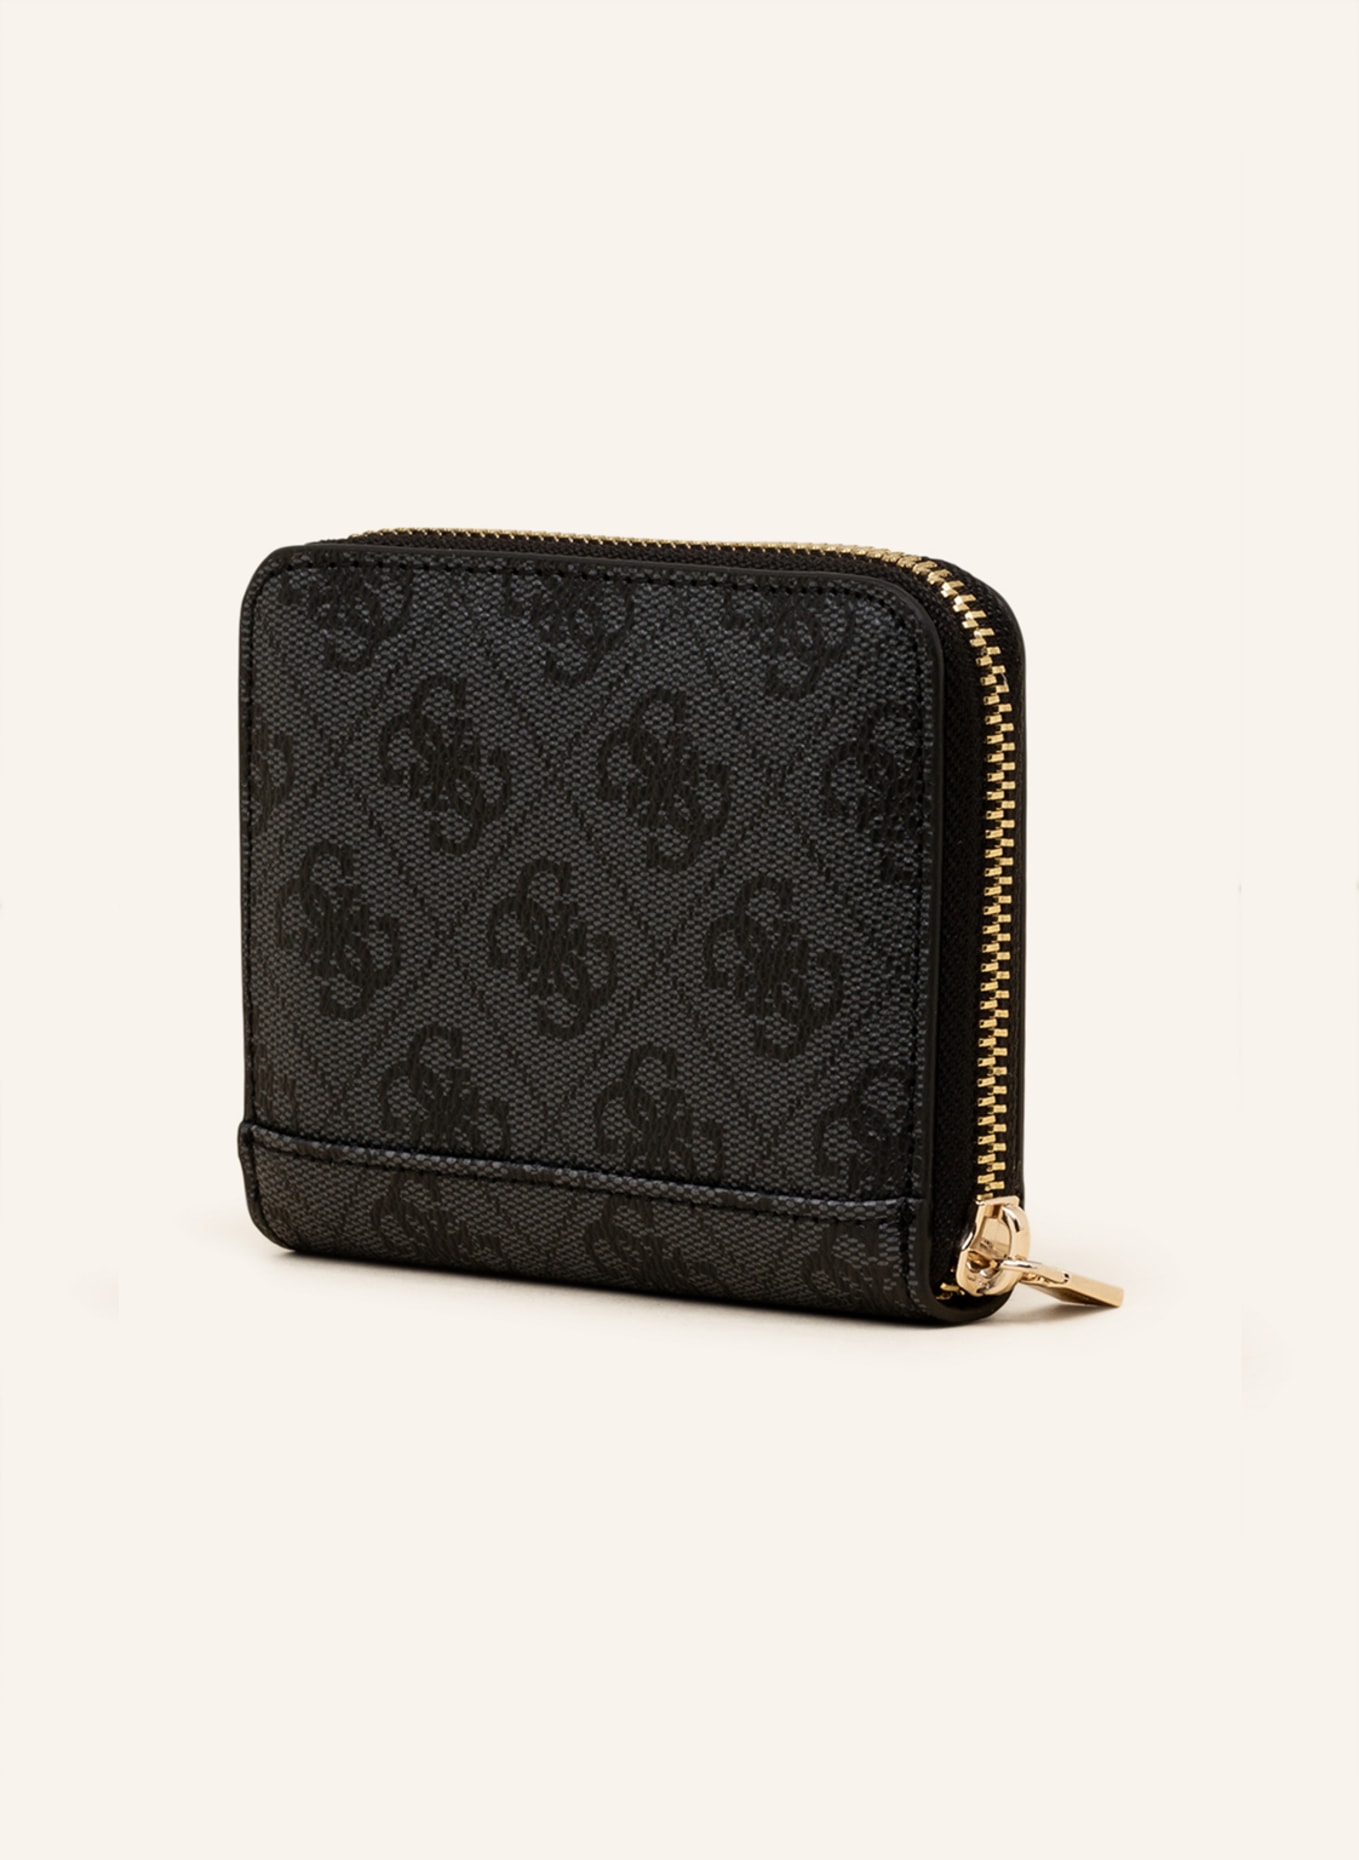 Women's fashion short wallet embroidered change bag multi-position buckle  zipper wallet short wallet women's wallet - AliExpress